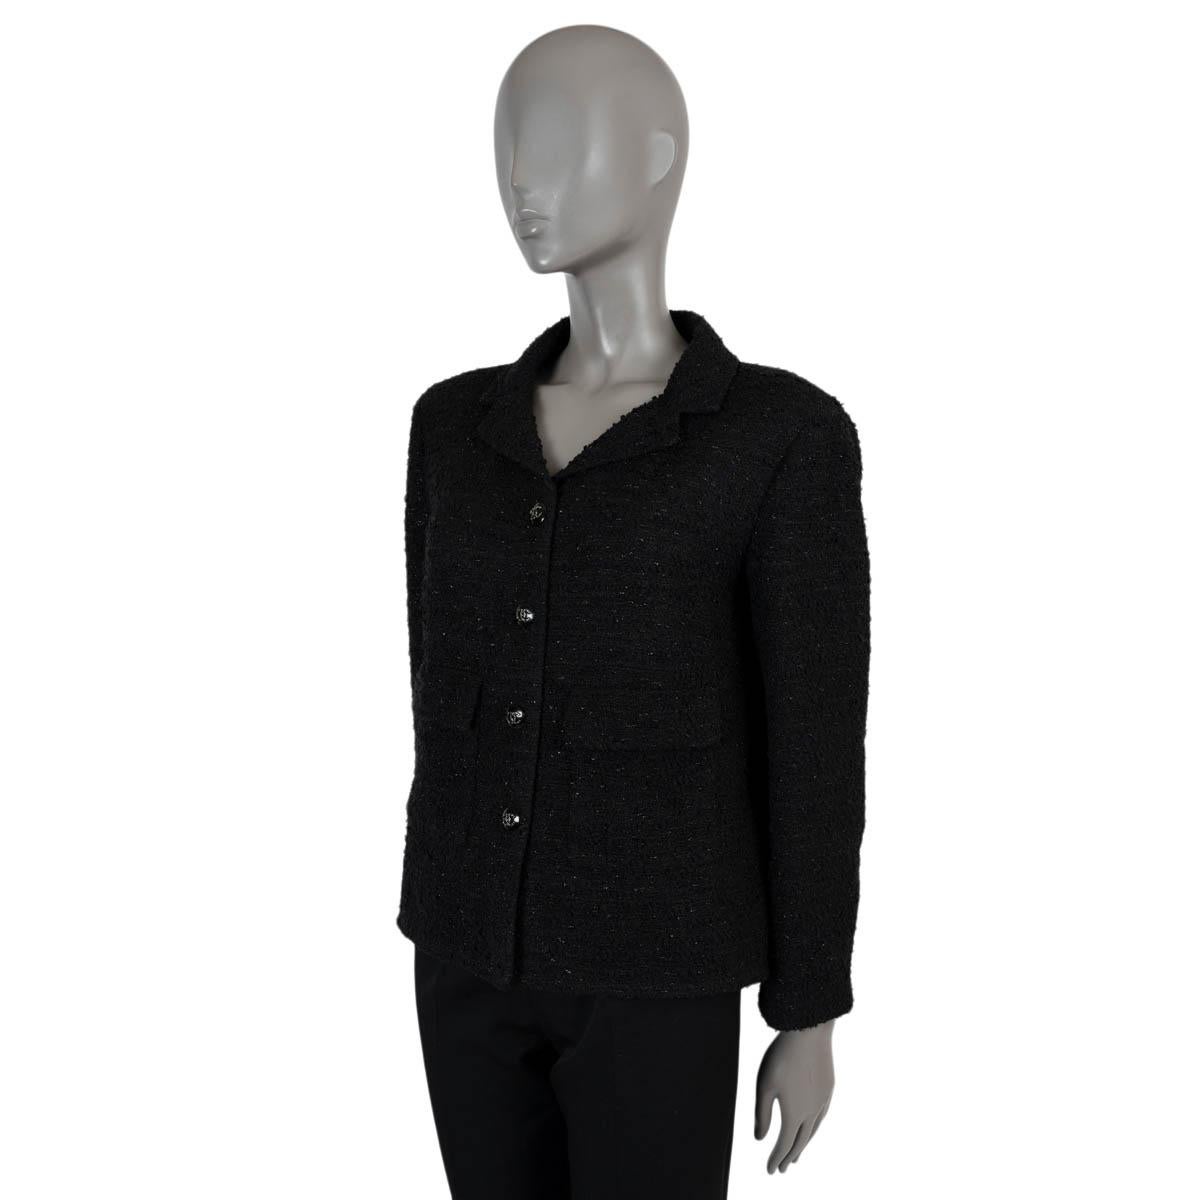 100% echte Chanel Lurex-Tweedjacke aus schwarzem Acryl (52%), Polyester (30%), Viskose (9%) und Polyamid (9%). Klassisches schwarzes Jäckchen mit Spitzrevers und zwei Pattentaschen in der Taille. Wird mit strassbesetzten CC-Knöpfen auf der